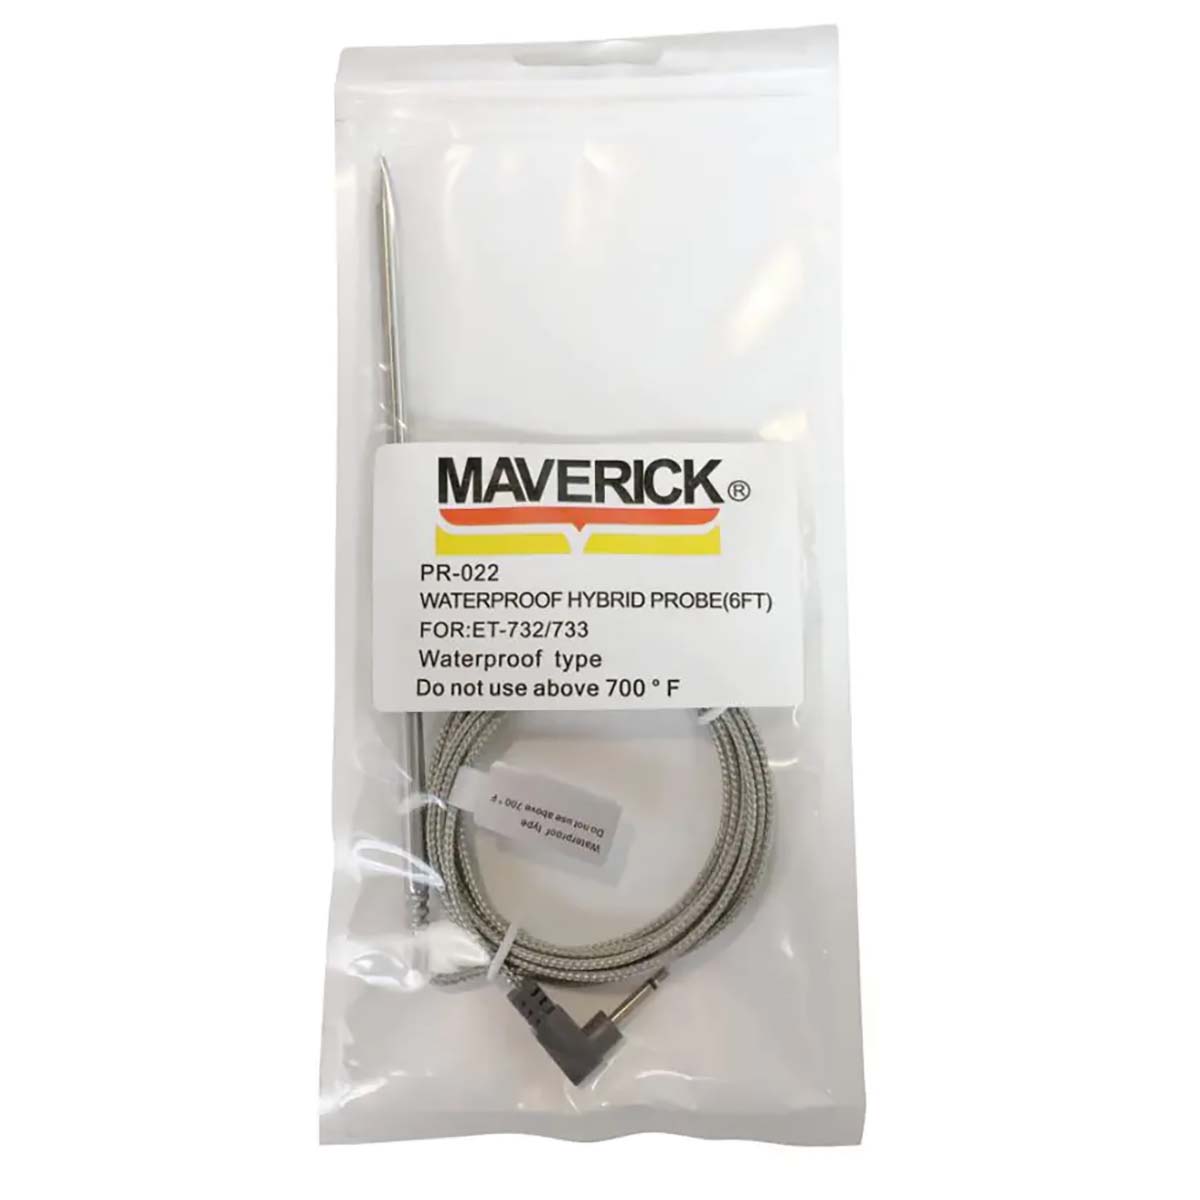 Maverick wasserdichter Hybrid-Fühler für ET-735 und XR-40